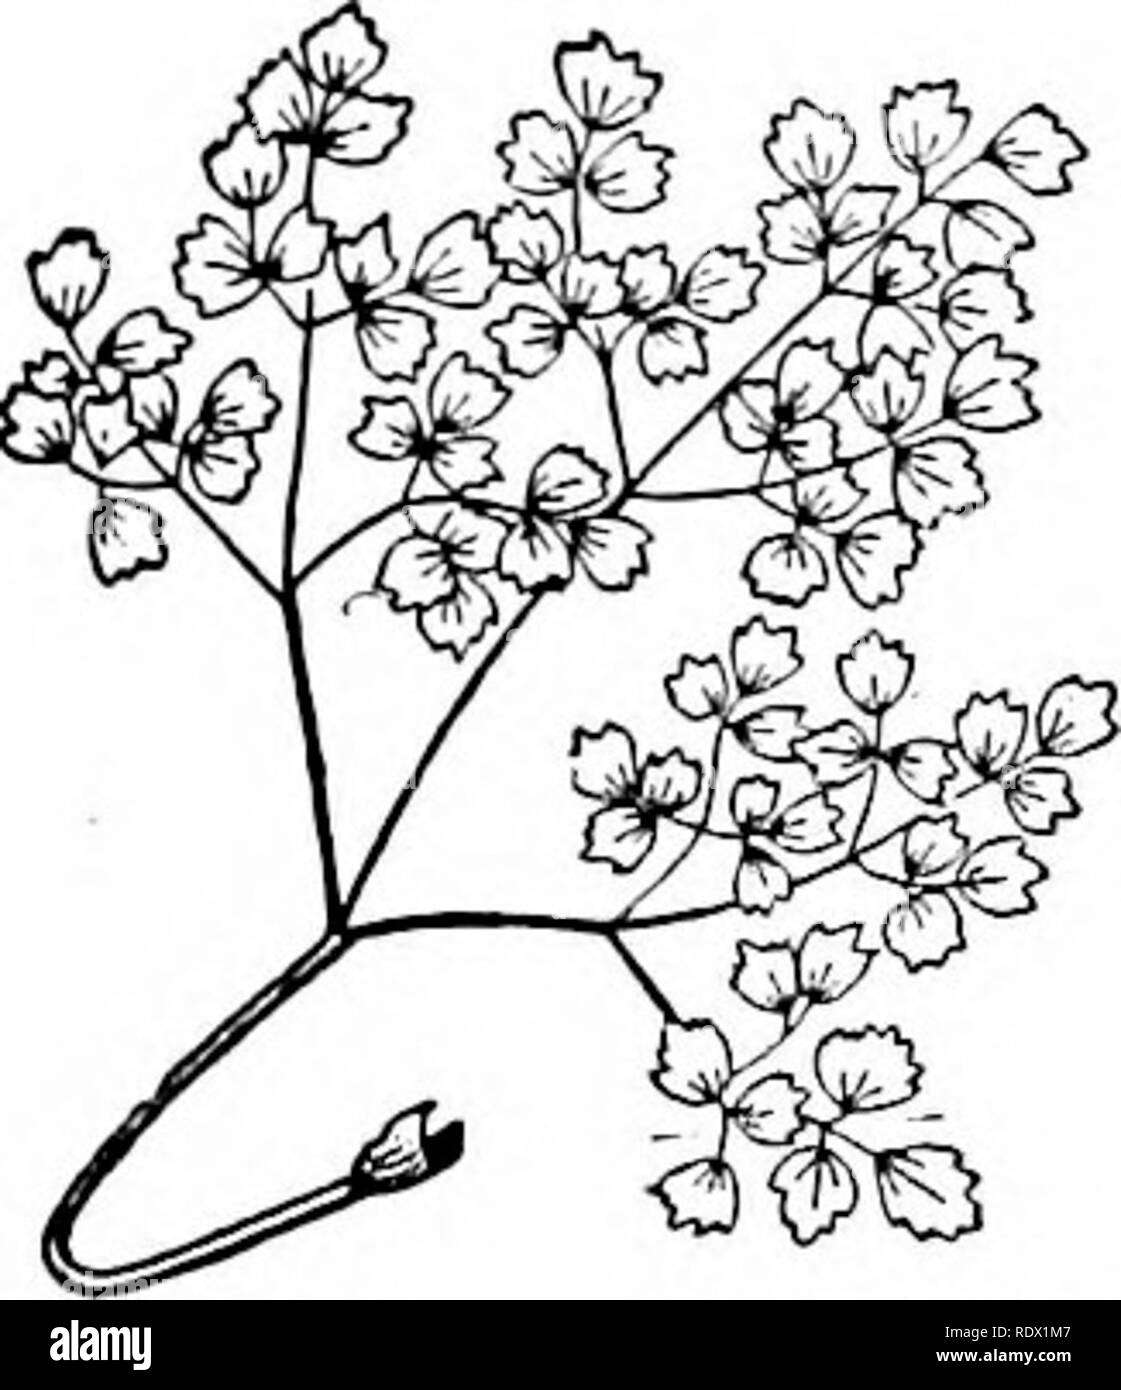 . Décrit de botanique pour le laboratoire de l'école secondaire et l'enseignement en classe (basé sur les leçons de gris en botanique) établi à la demande du Département de botanique de l'Université de Harvard. La botanique, la botanique. Â la n-ième le pétiole distingue ce dernier cas d'une simple feuille. Id d'autres espèces de l'yeiiera leallels ces latéraux sont également présents. 184. Les folioles d'une feuille composée peut L&155;e l'enlire (comme ui fig. 12i-126), ou dentelées, ou lobées, fente, parted, etc. ; en fait, peuvent envoyé toutes les variantes des feuilles simples, et les mêmes conditions s'appliquent également à eux. 185. Lorsque la division est acceptée jusqu'à présent Banque D'Images